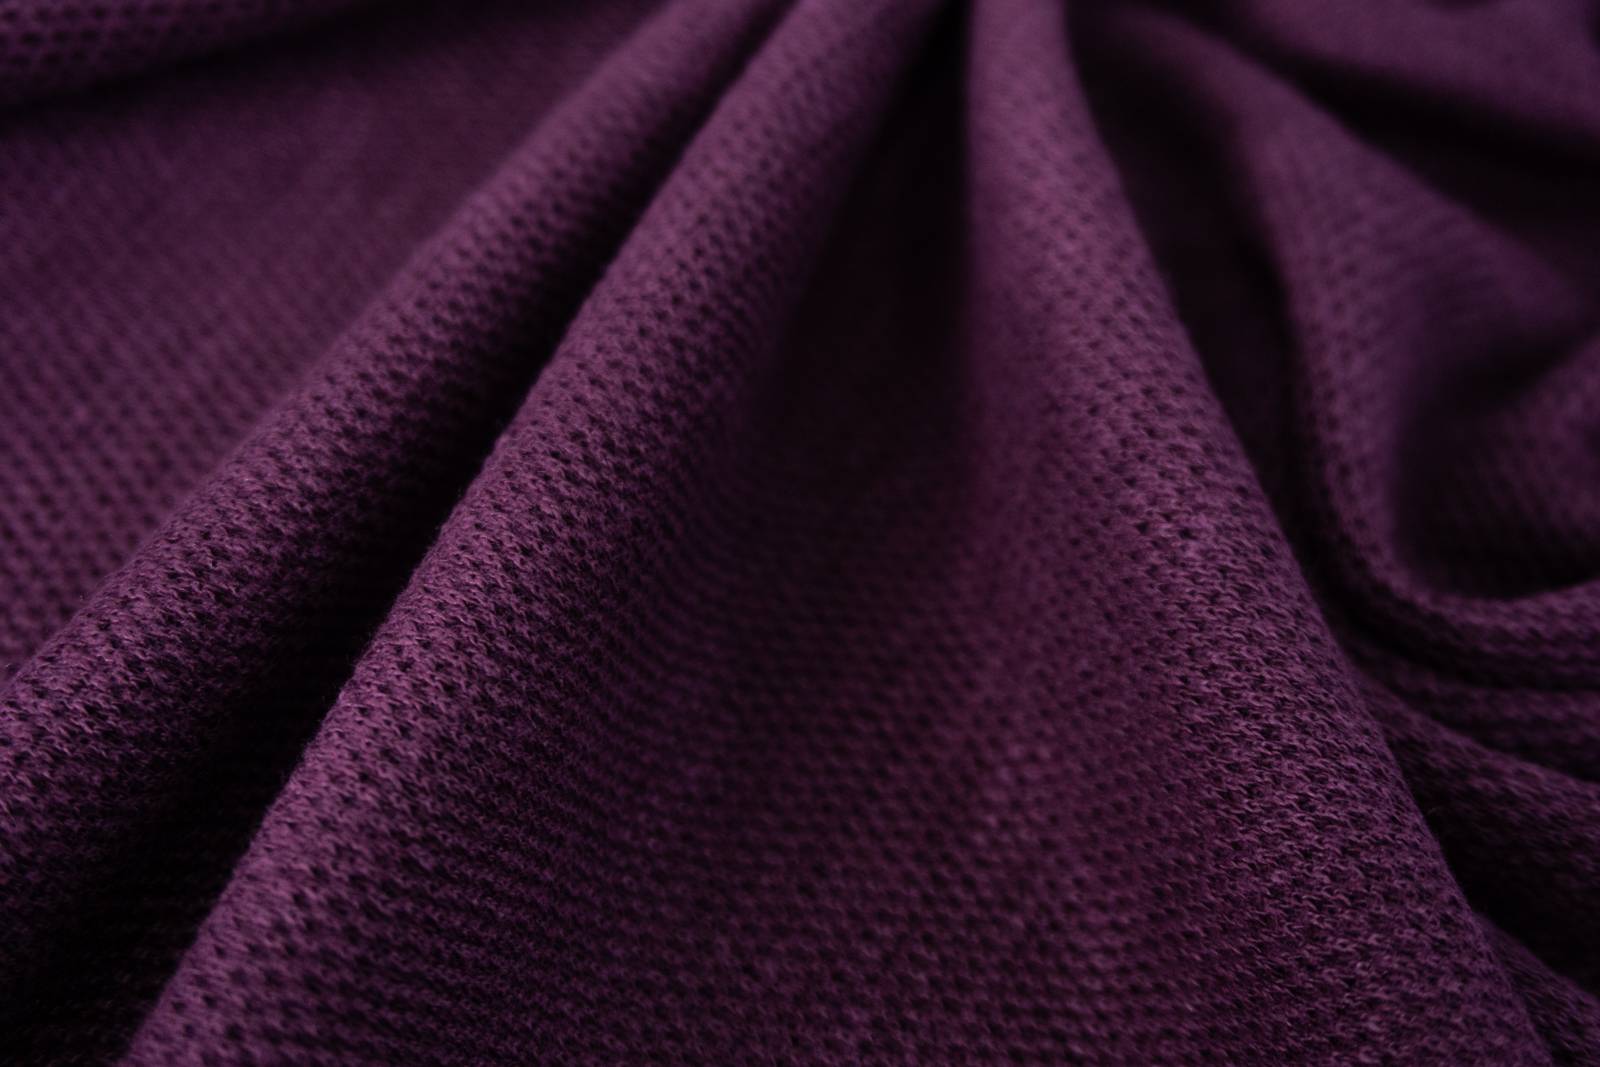 Ткань лакоста: что это за материал, описание трикотажа и отзывы, размерная сетка одежды